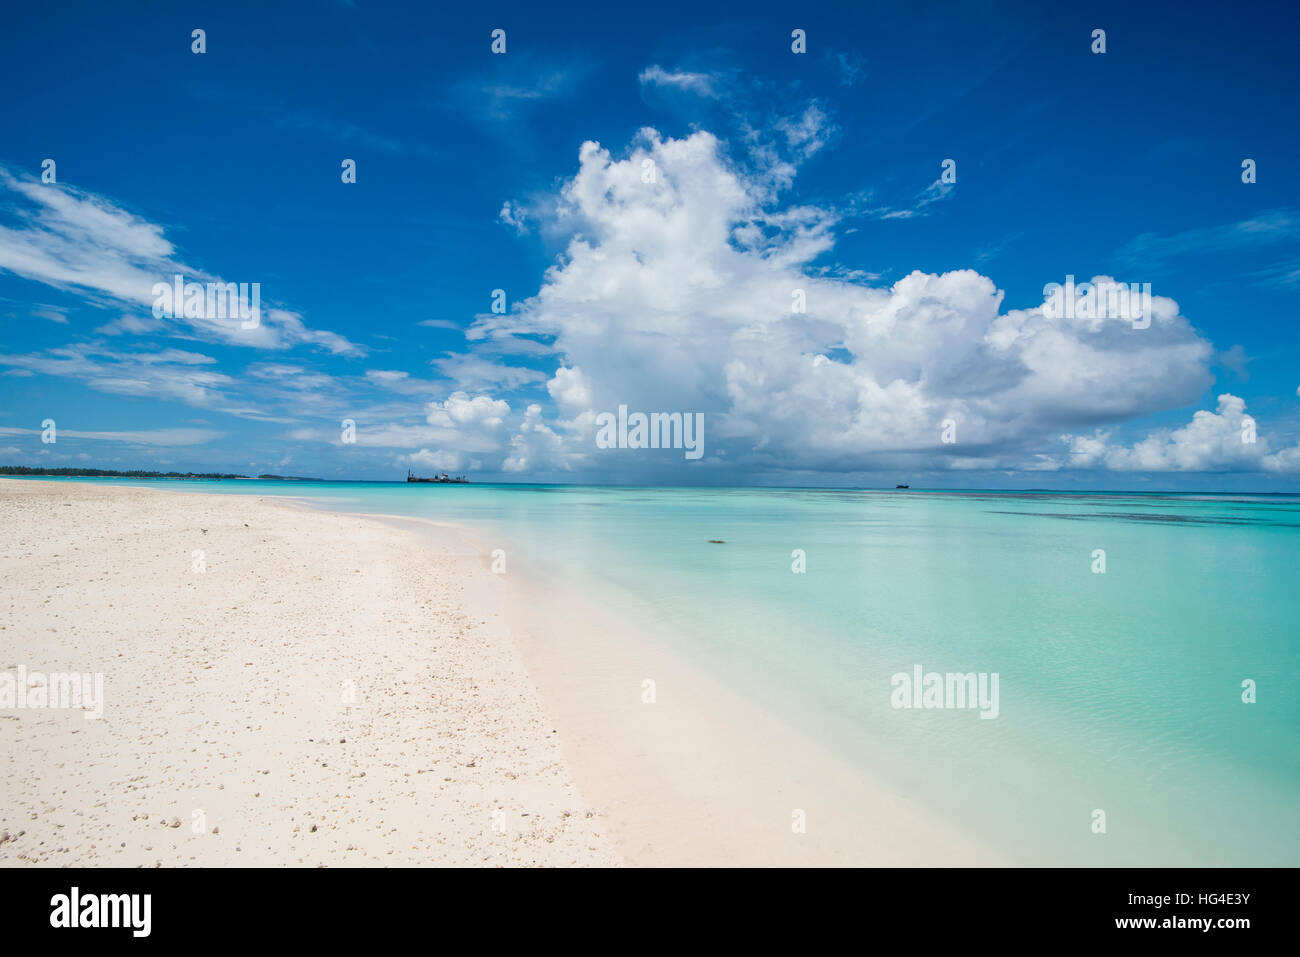 La arena blanca y el agua color turquesa en la hermosa laguna de Funafuti, Tuvalu, Pacífico Sur Foto de stock